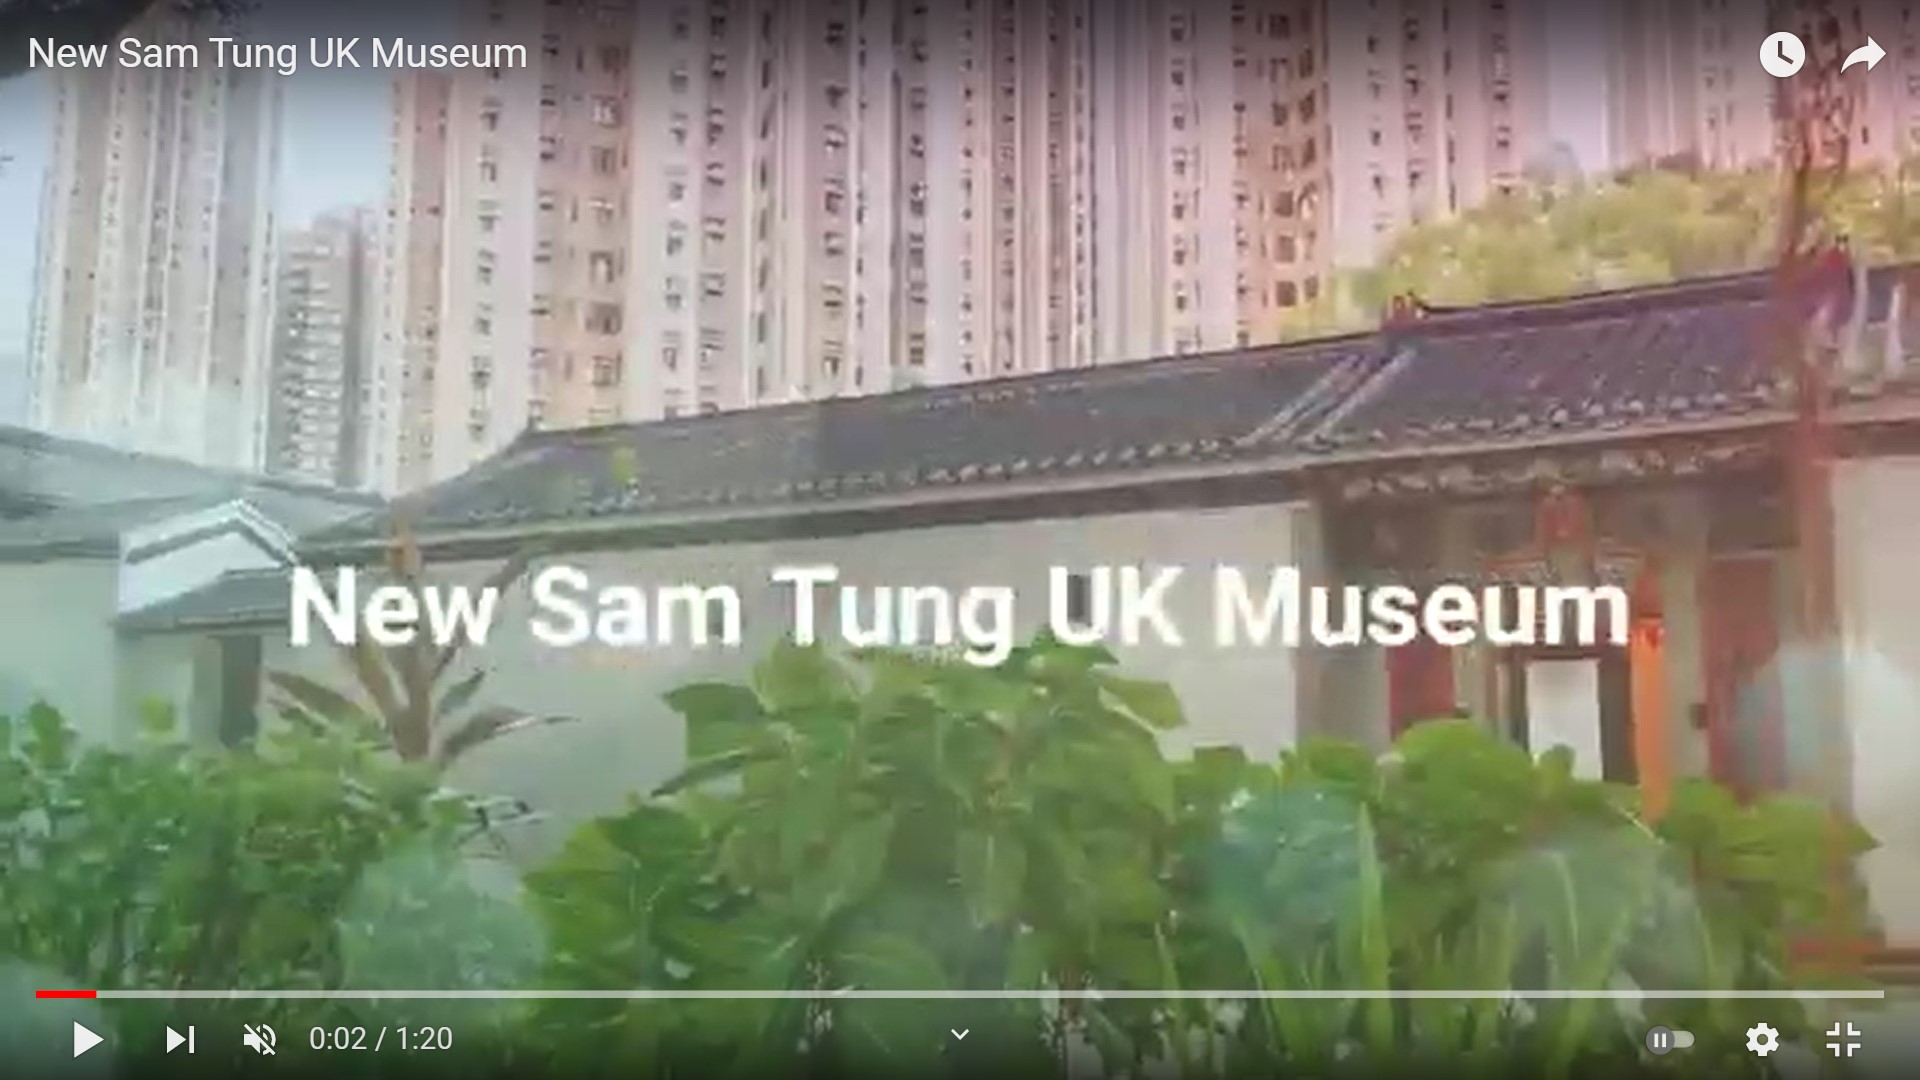 Frank’s “New Sam Tung Uk Museum” snapshots video